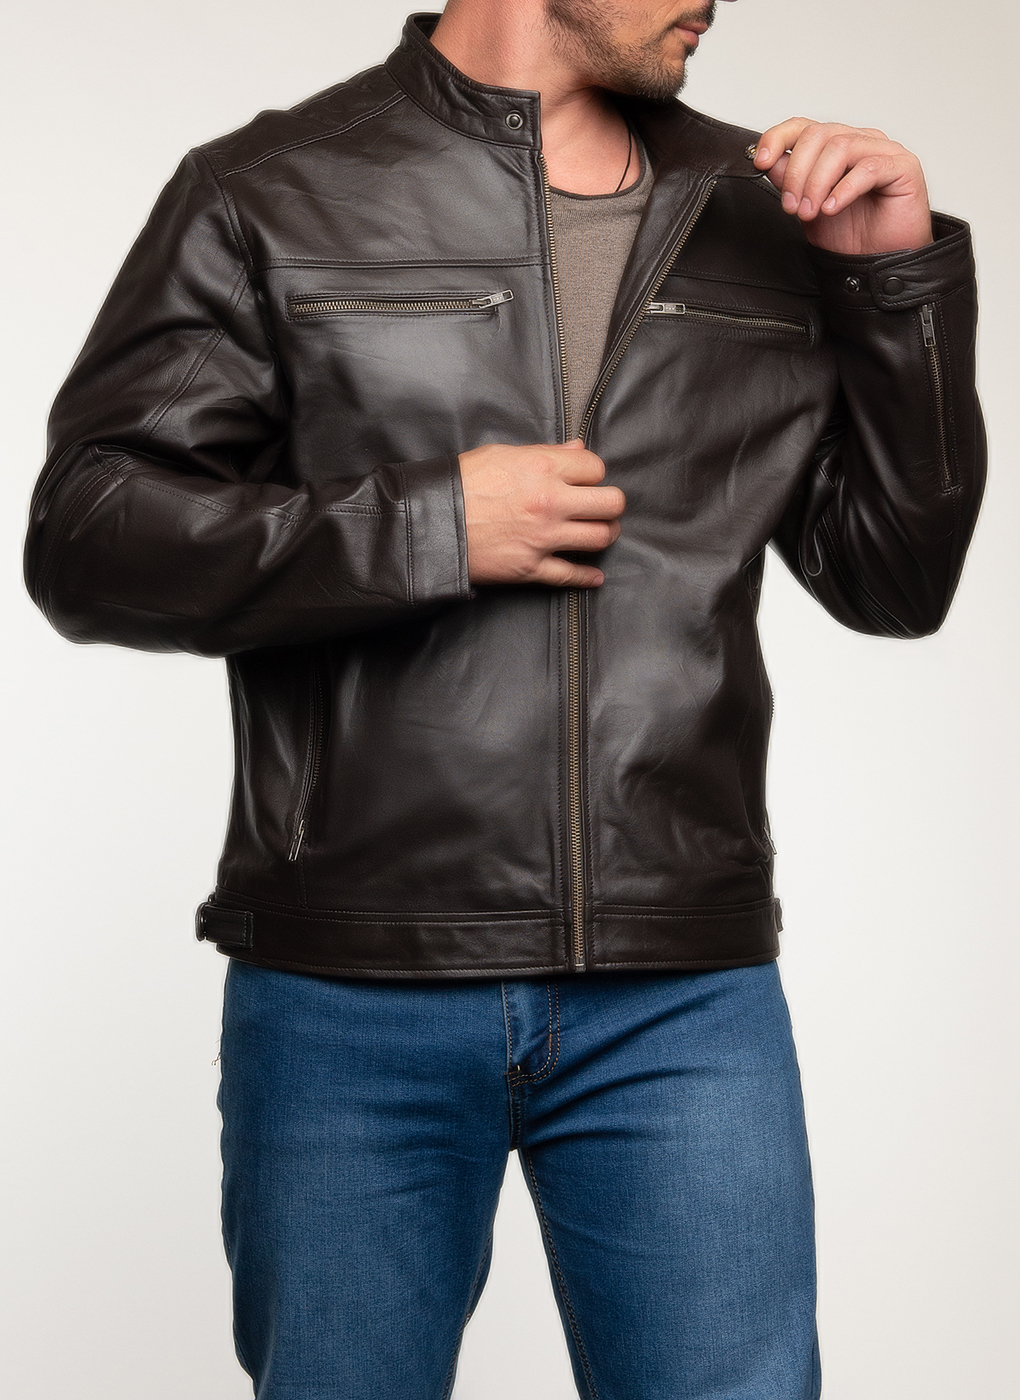 Кожаная куртка мужская Каляев 62651 коричневая 50 RU